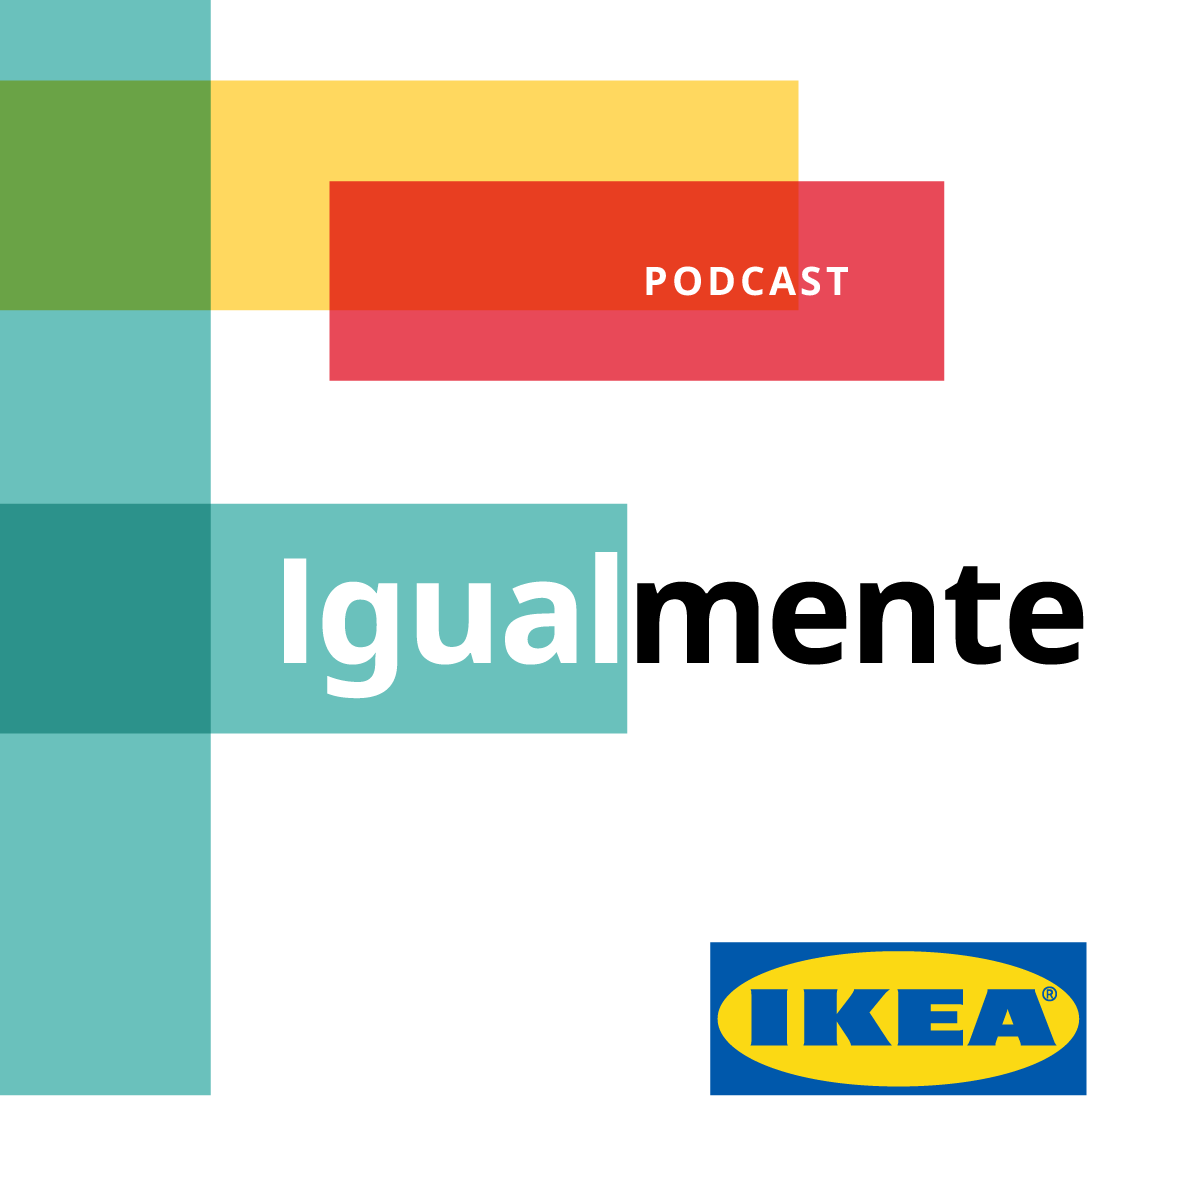 Rui Maria Pêgo conduz podcast da Ikea sobre igualdade (com vídeo) - Meios & Publicidade